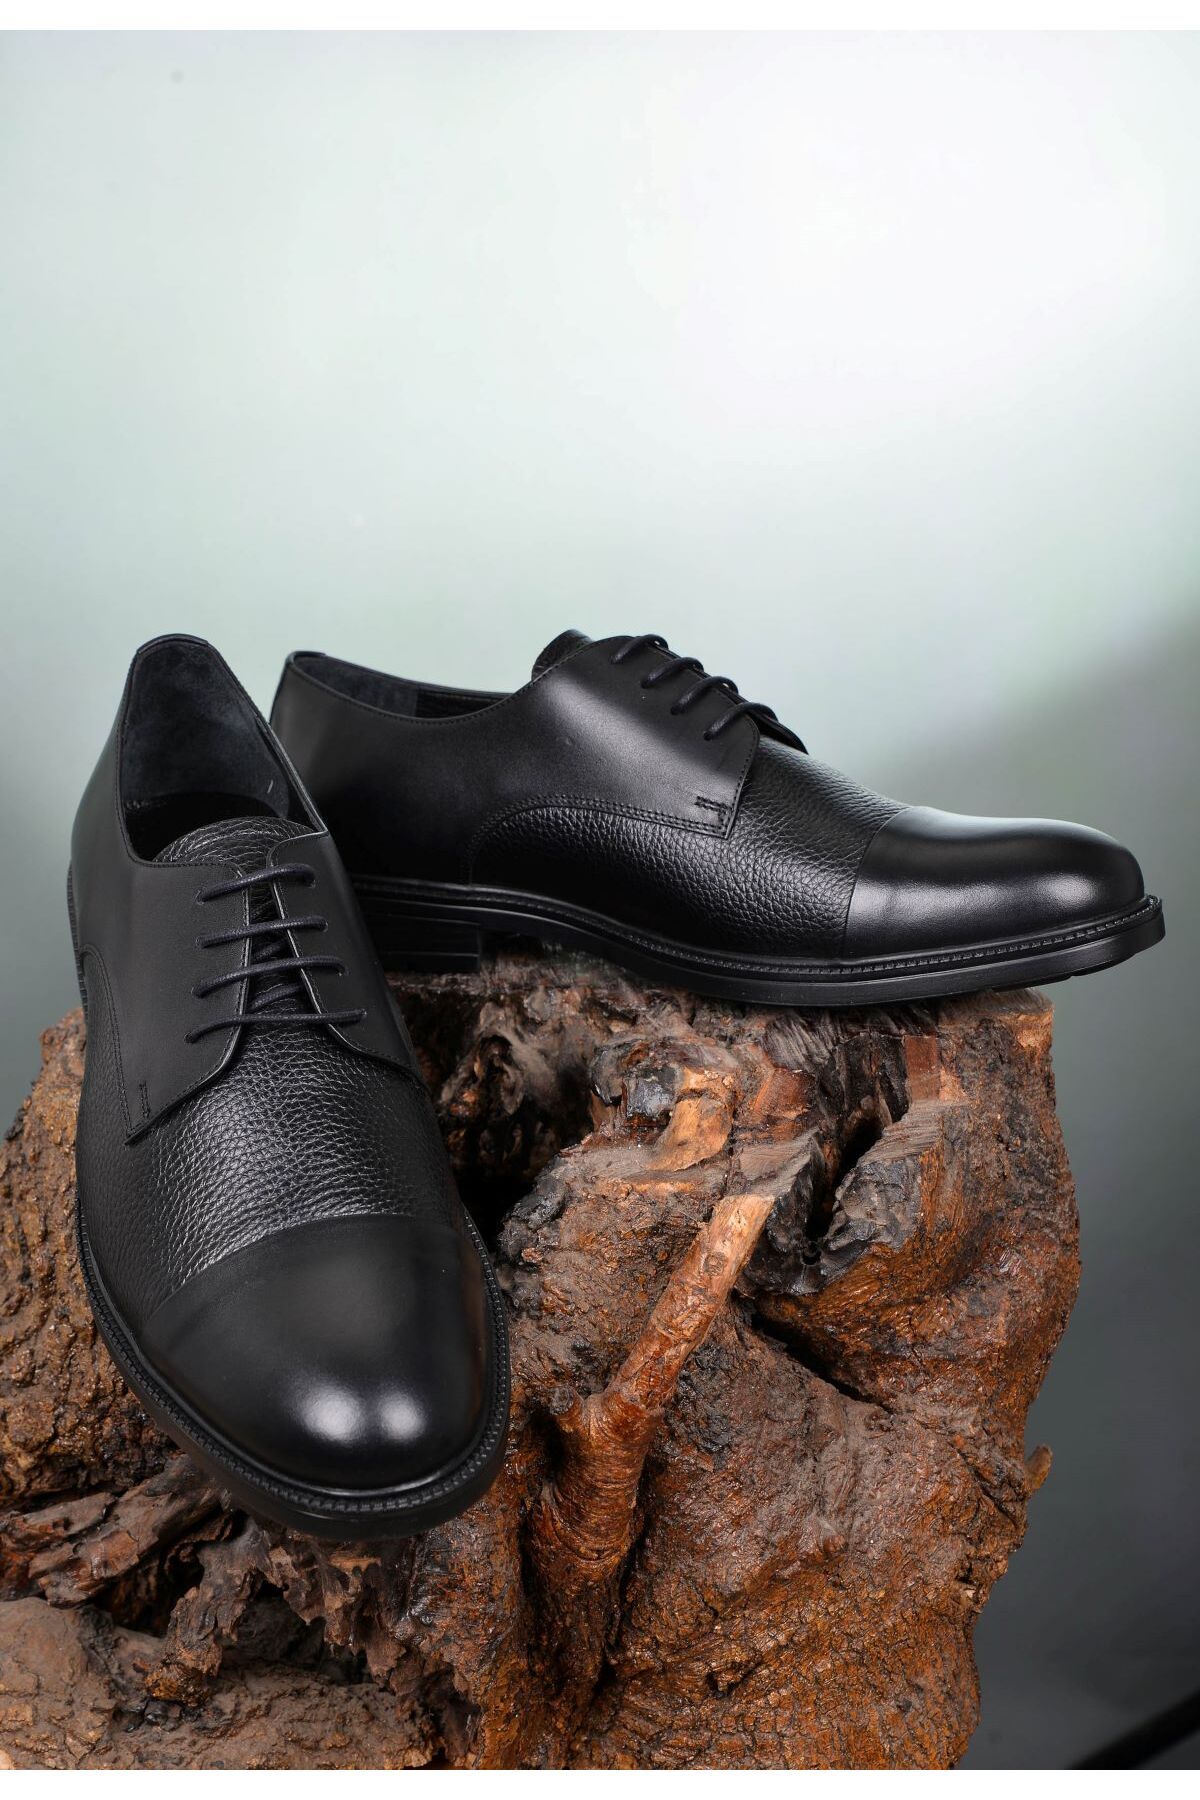 JAMES FRANCO Erkek Siyah Büyük Beden Damatlık&Takım Elbise  Ayakkabısı Sağlamlık Ve Şıklığı Bir Arada Sunan Model